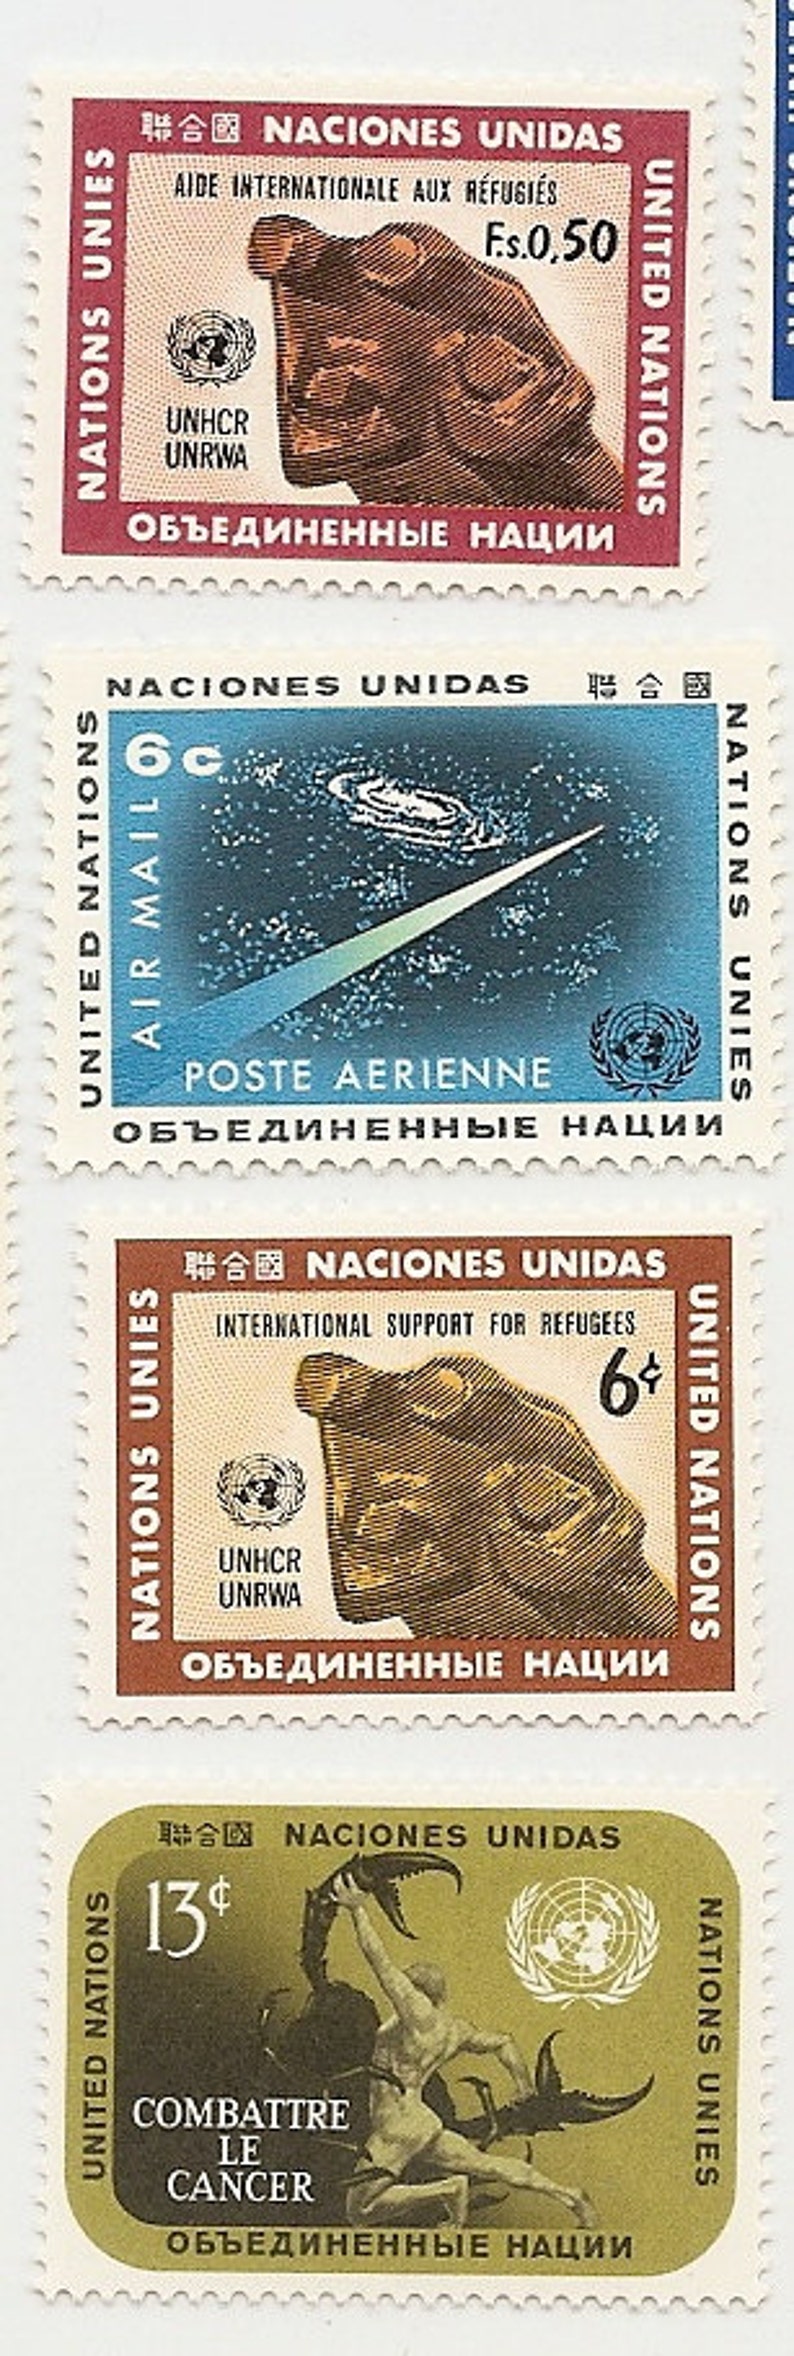 95 Vintage Unused UNITED NATIONS STAMPS image 3